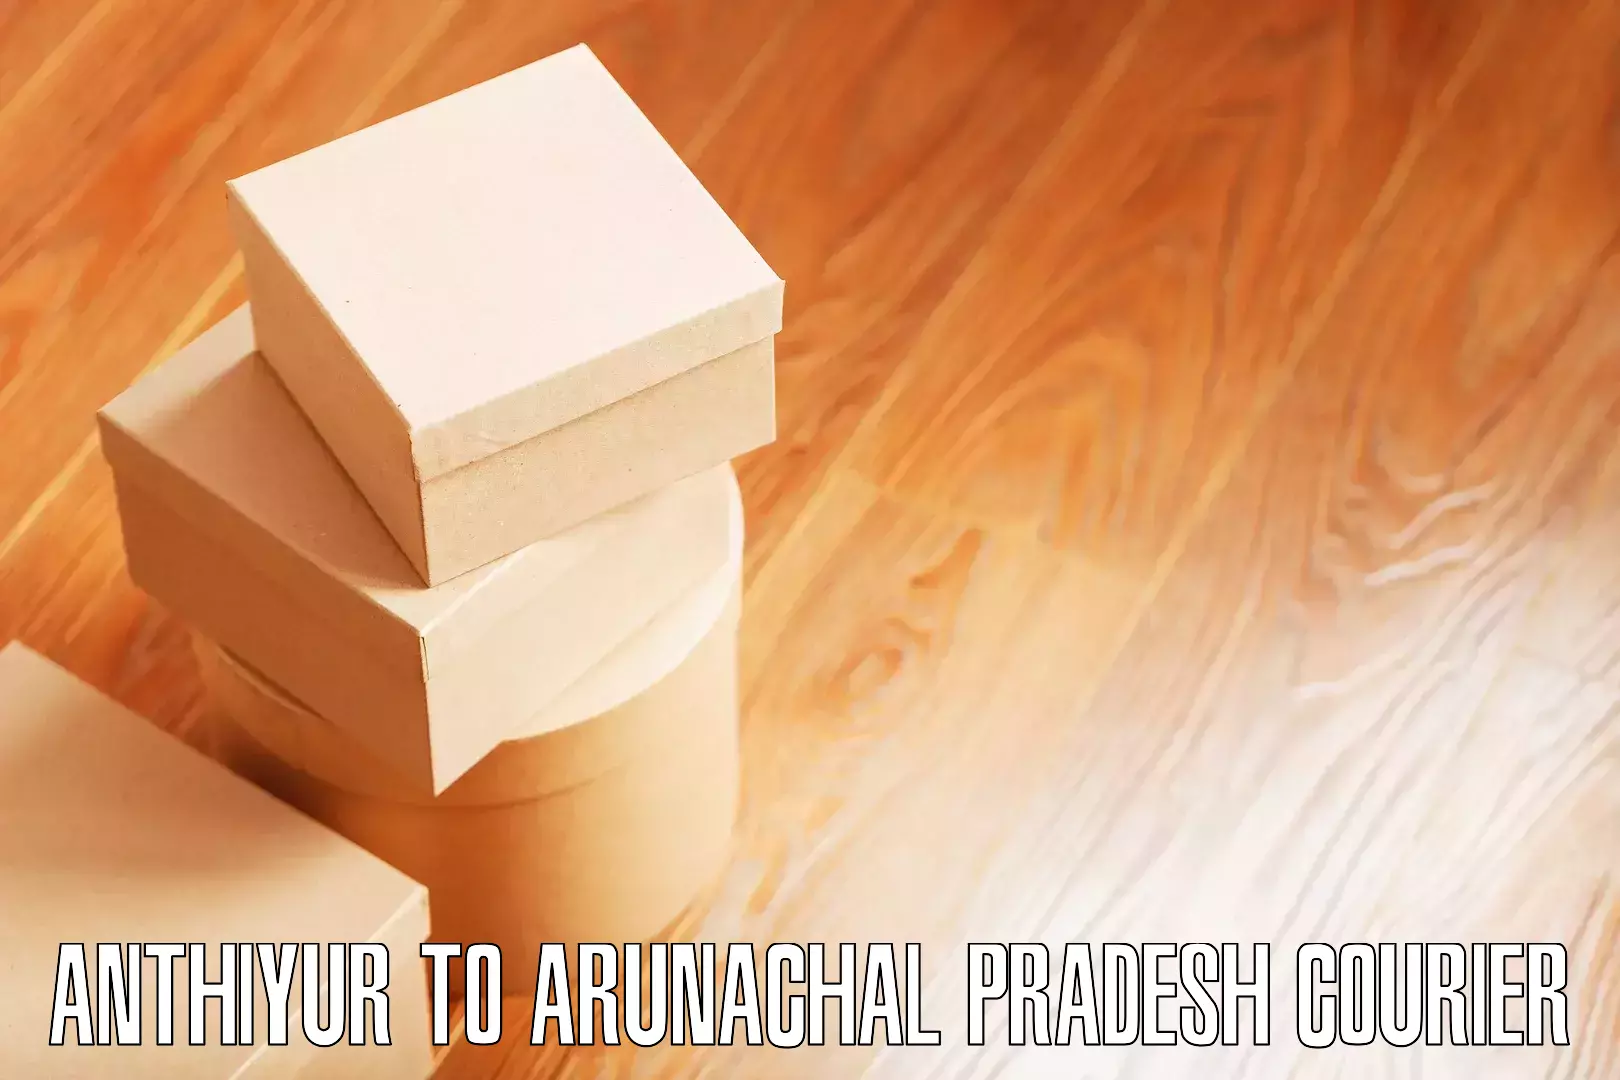 Professional relocation services Anthiyur to Arunachal Pradesh